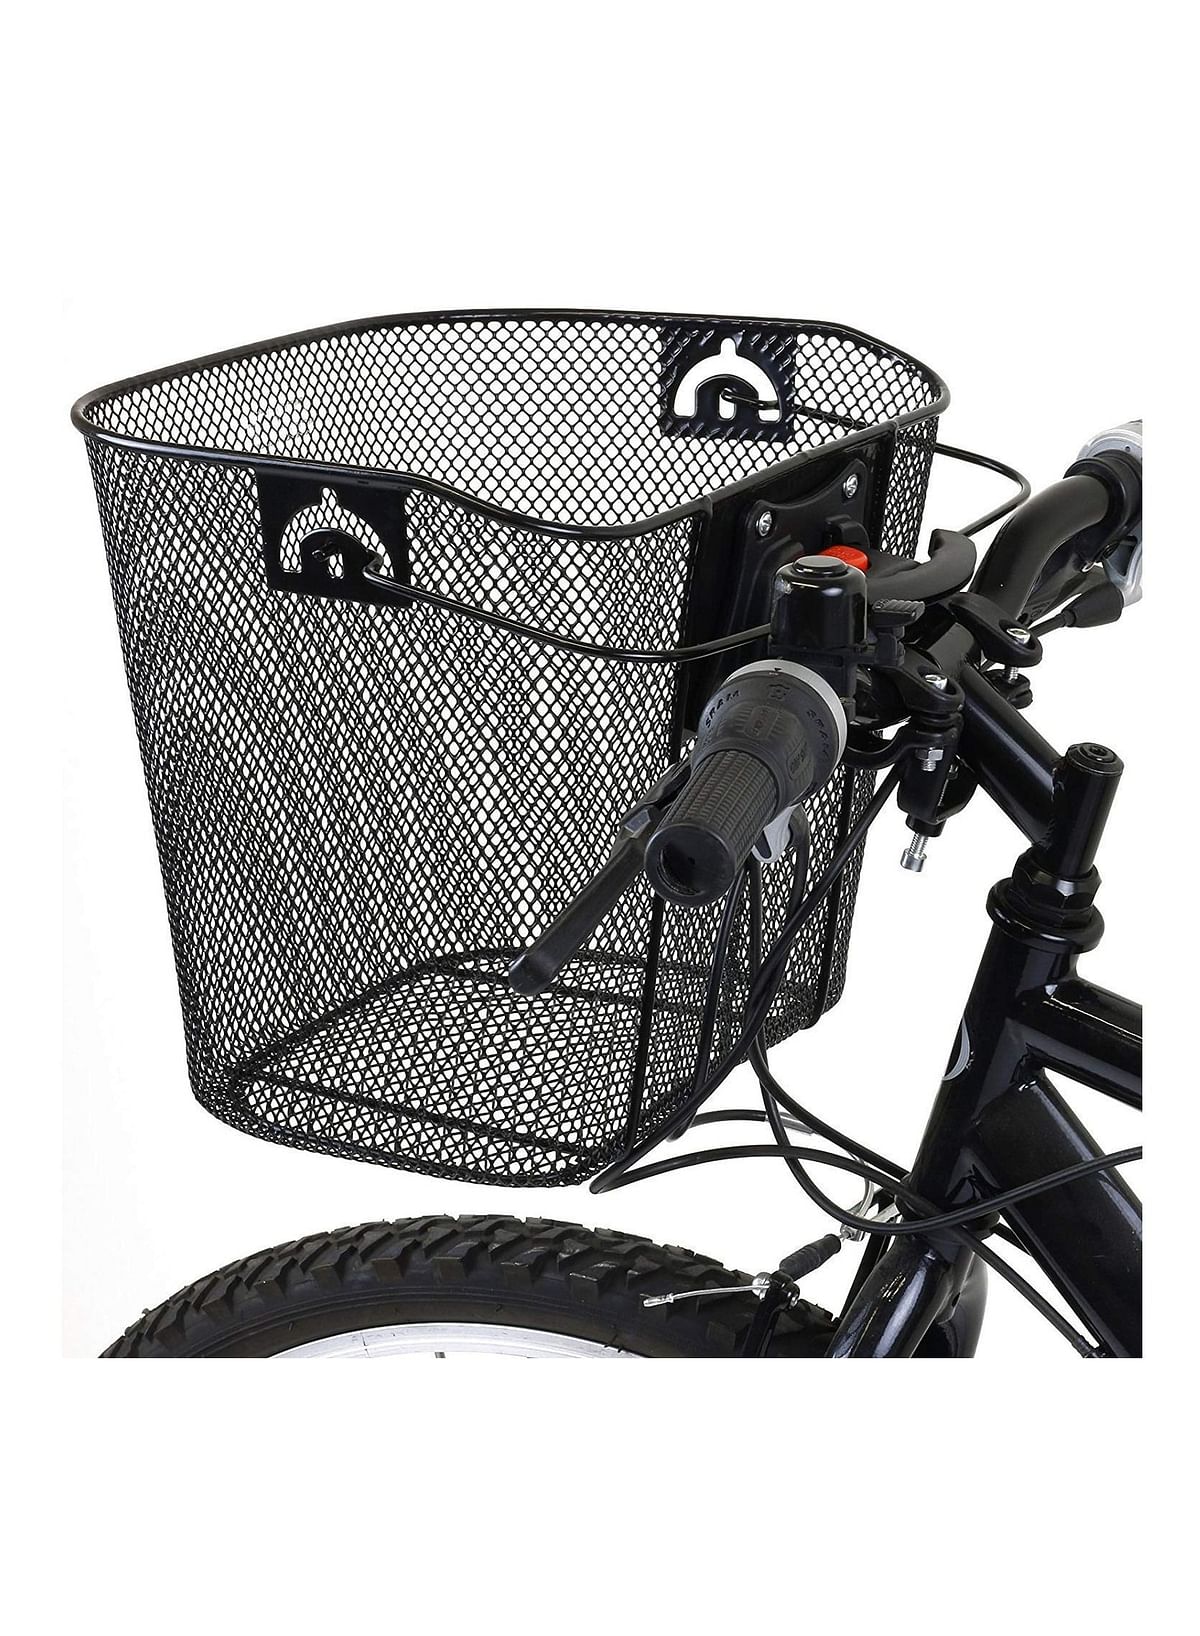 Bike Front Carrier Basket Pet Carrier Quick Release Basket designed Metal Mesh Basket for Front of Bicycle